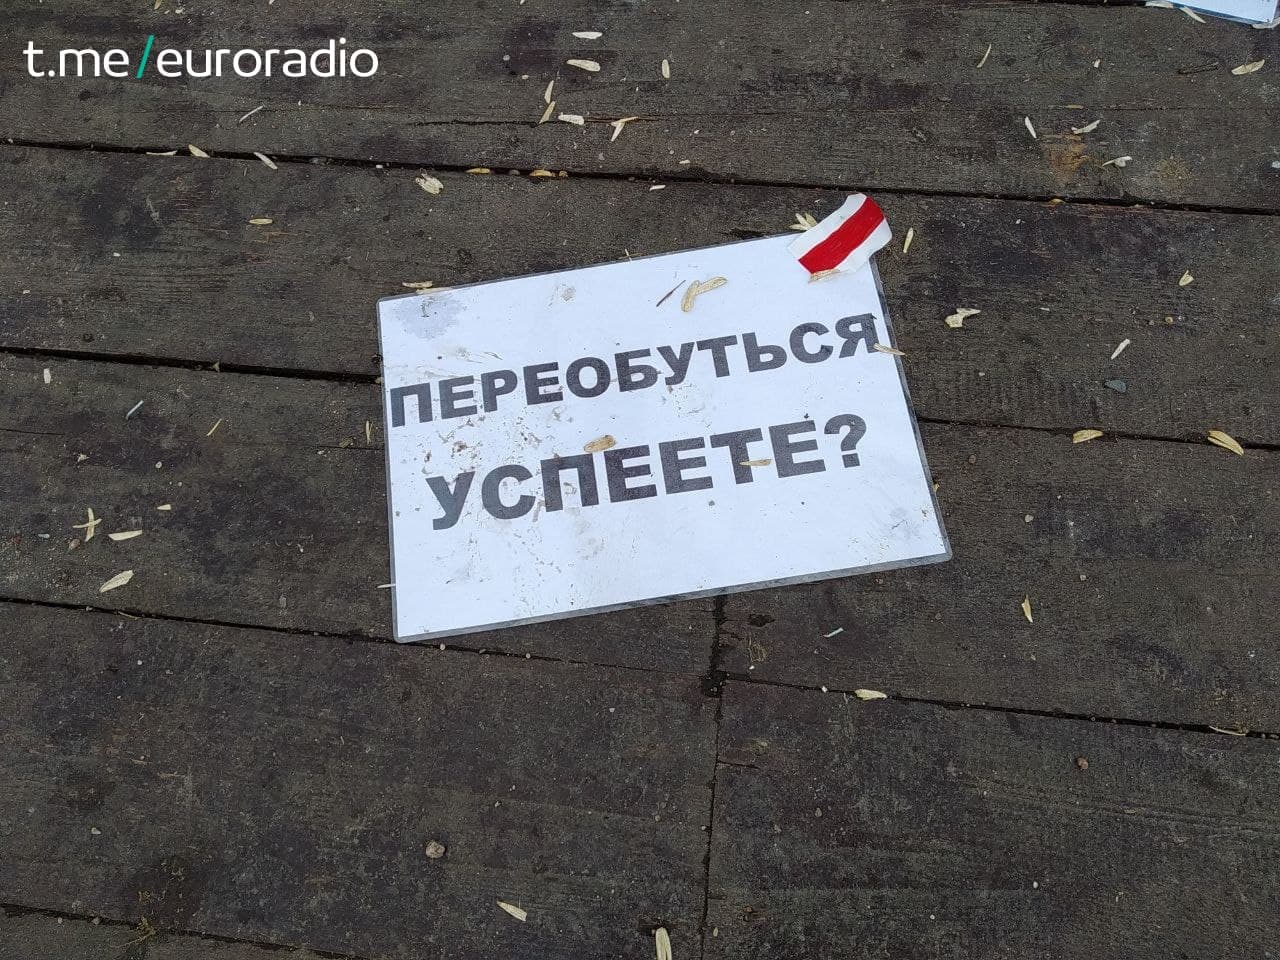 "Переобуться успеете?": В Минске появилась политическая инсталляция из обуви